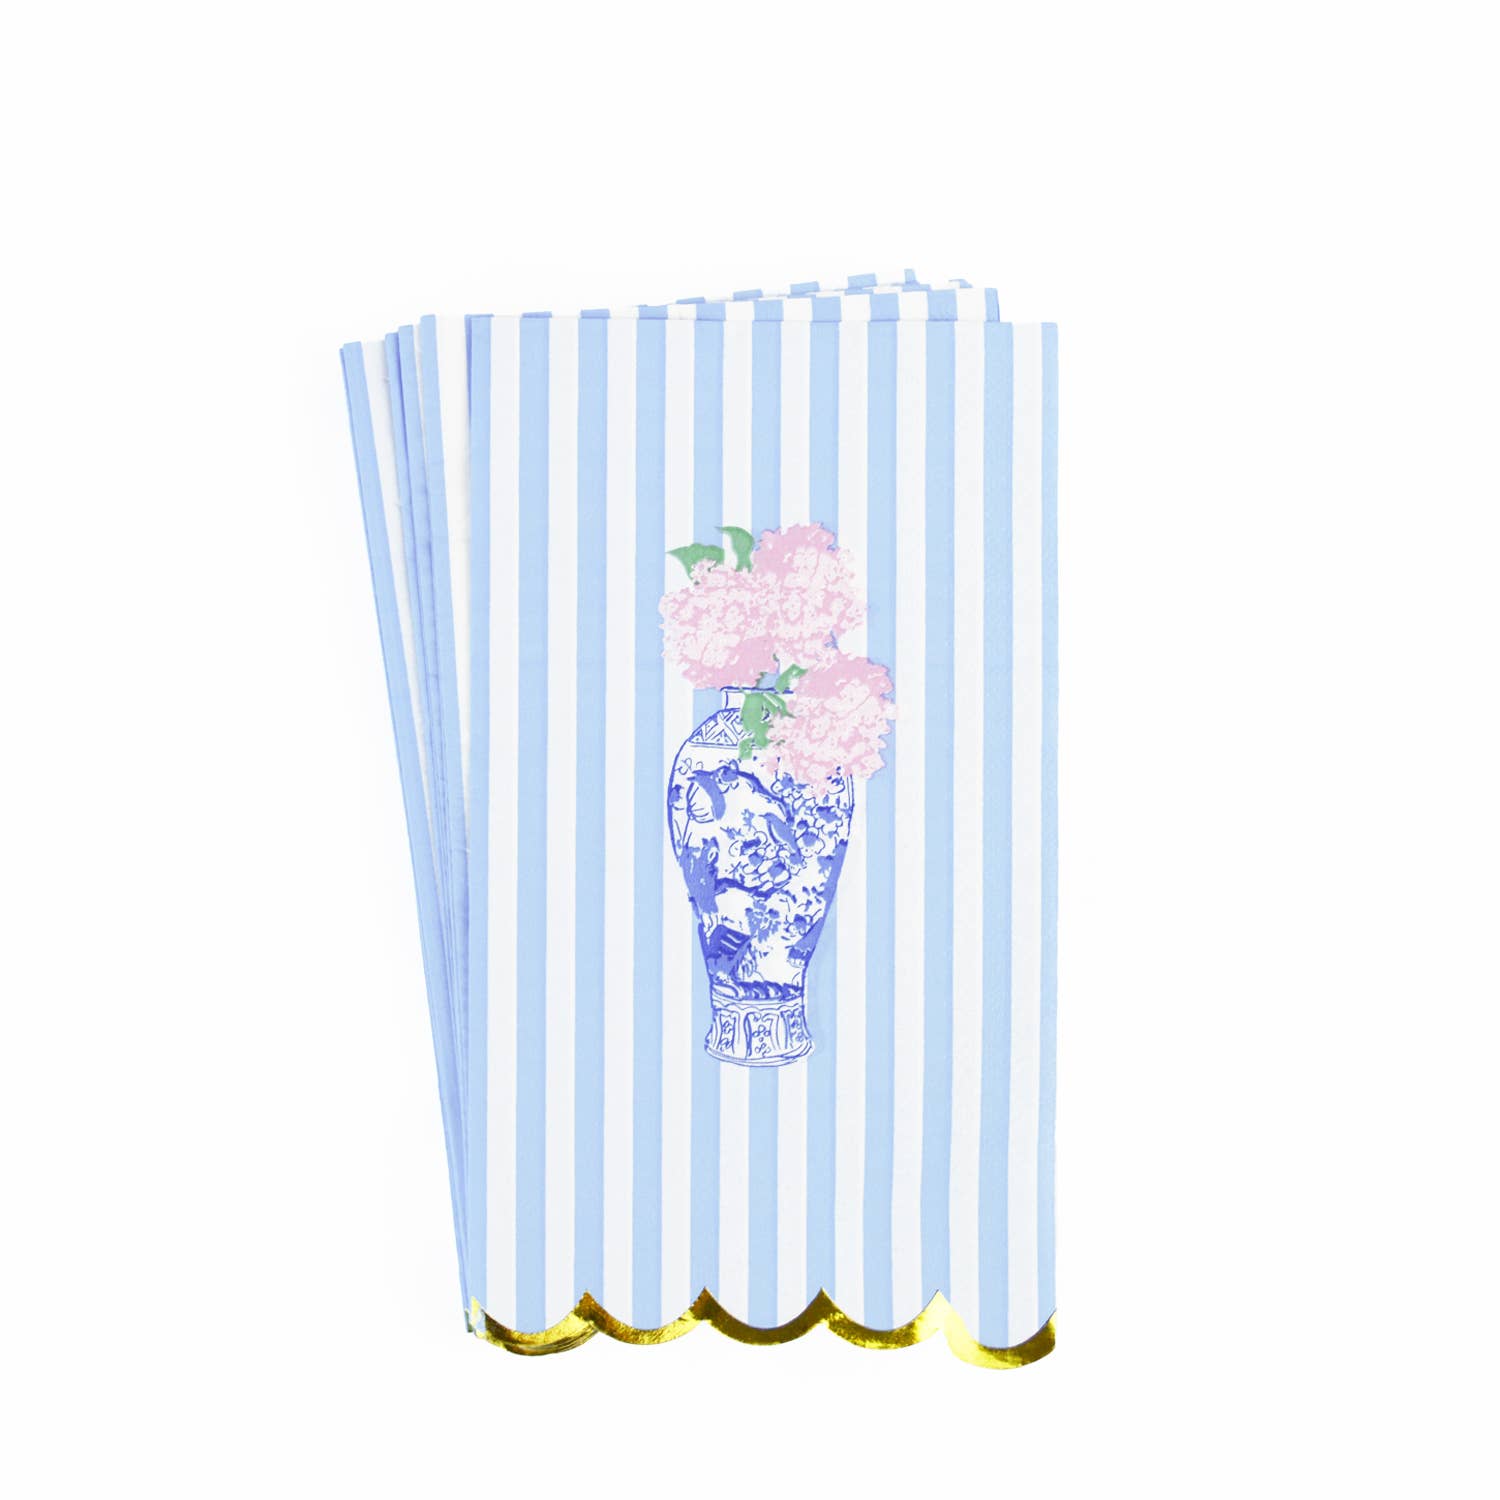 8 Oak Lane - Ginger Jar Floral Paper Guest Towel Packs - Little Birdies